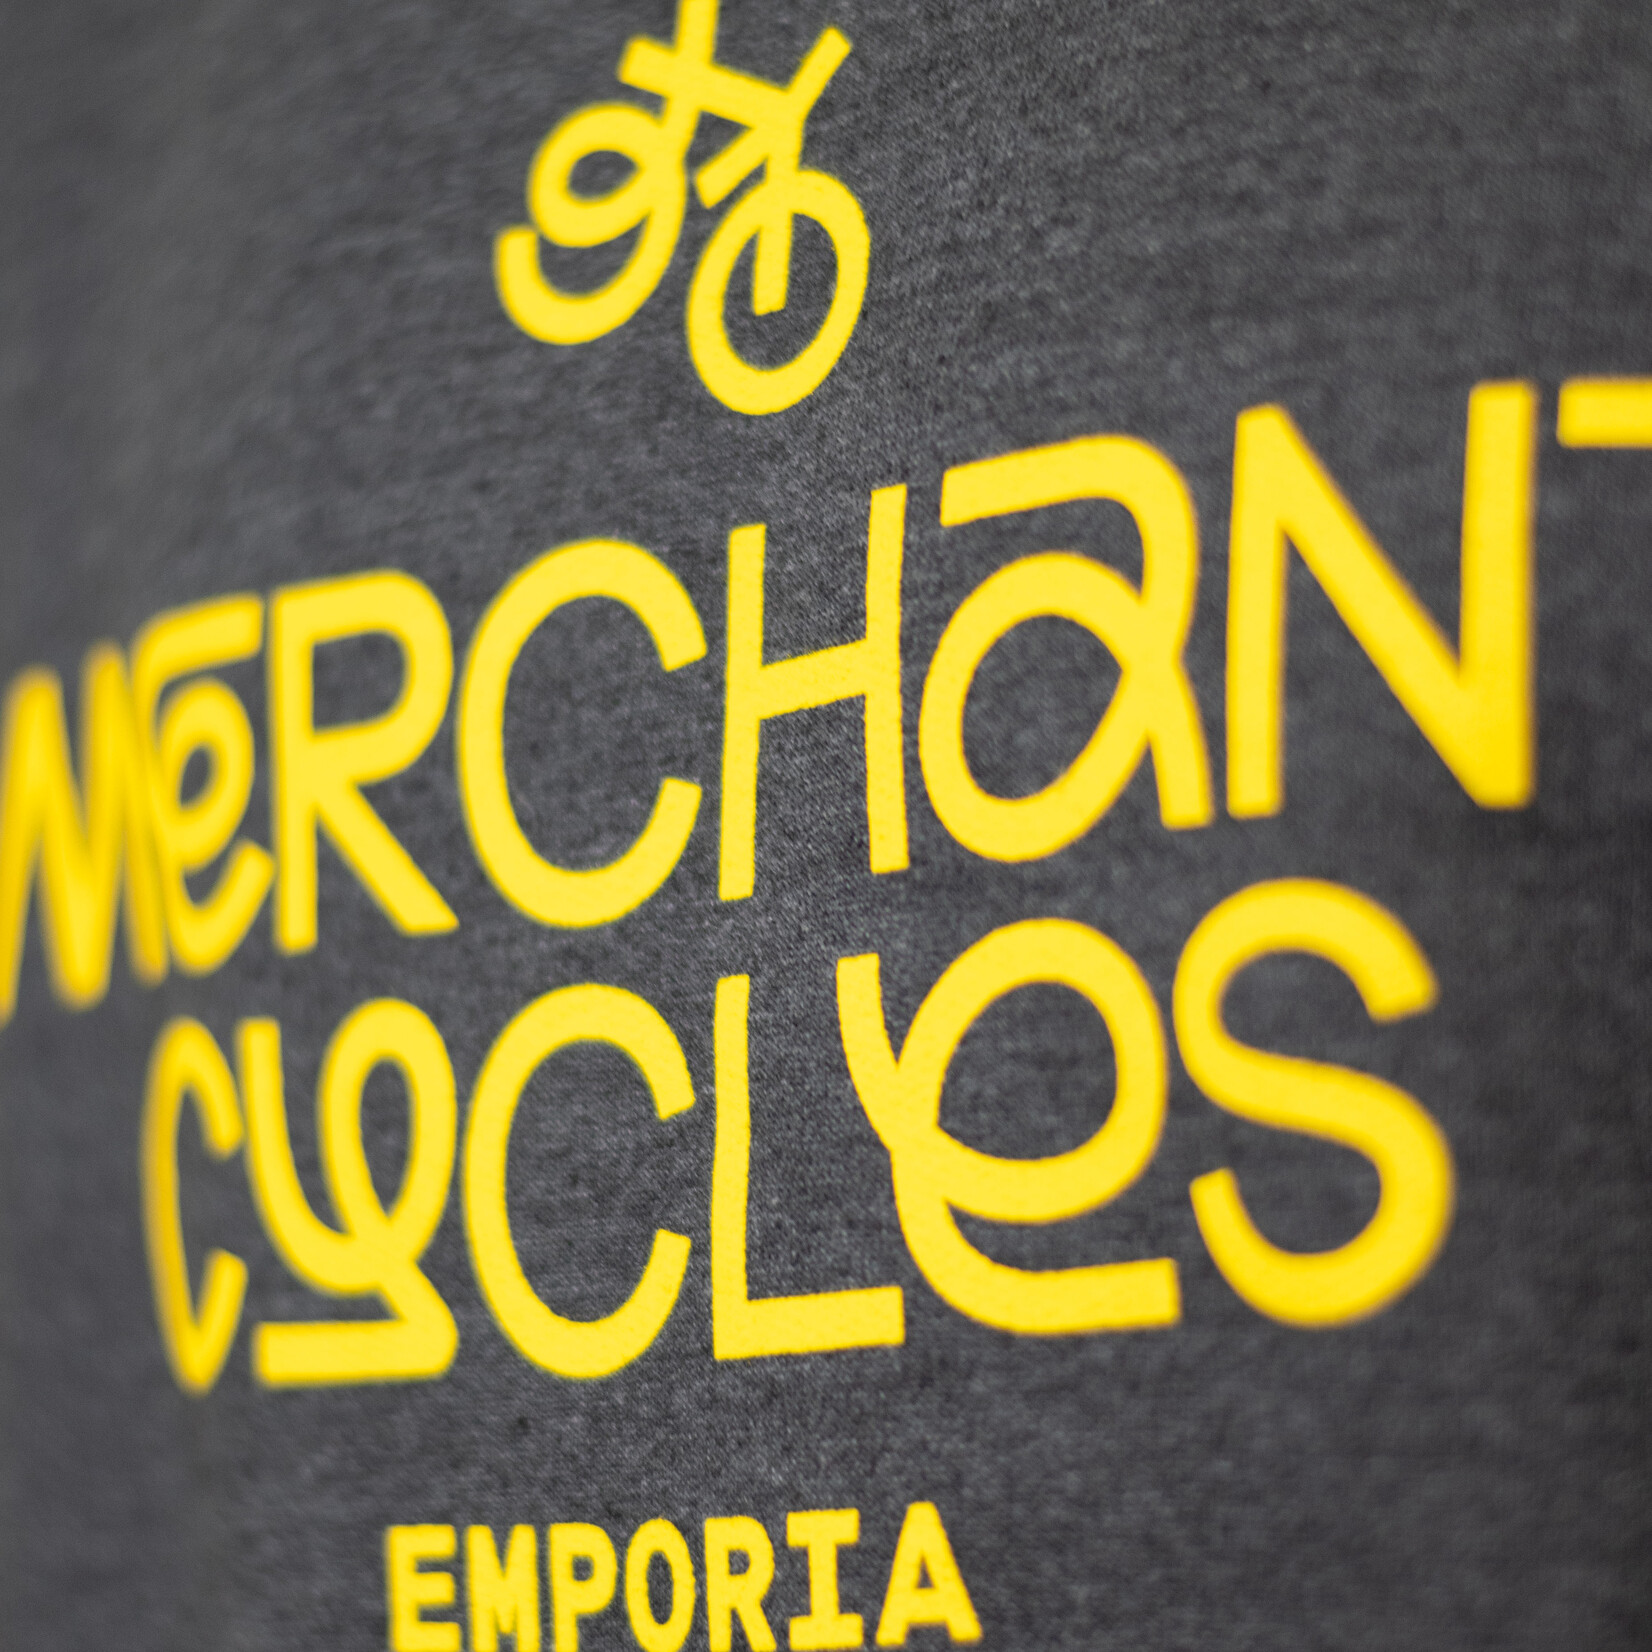 Merchant Cycles  Crewneck